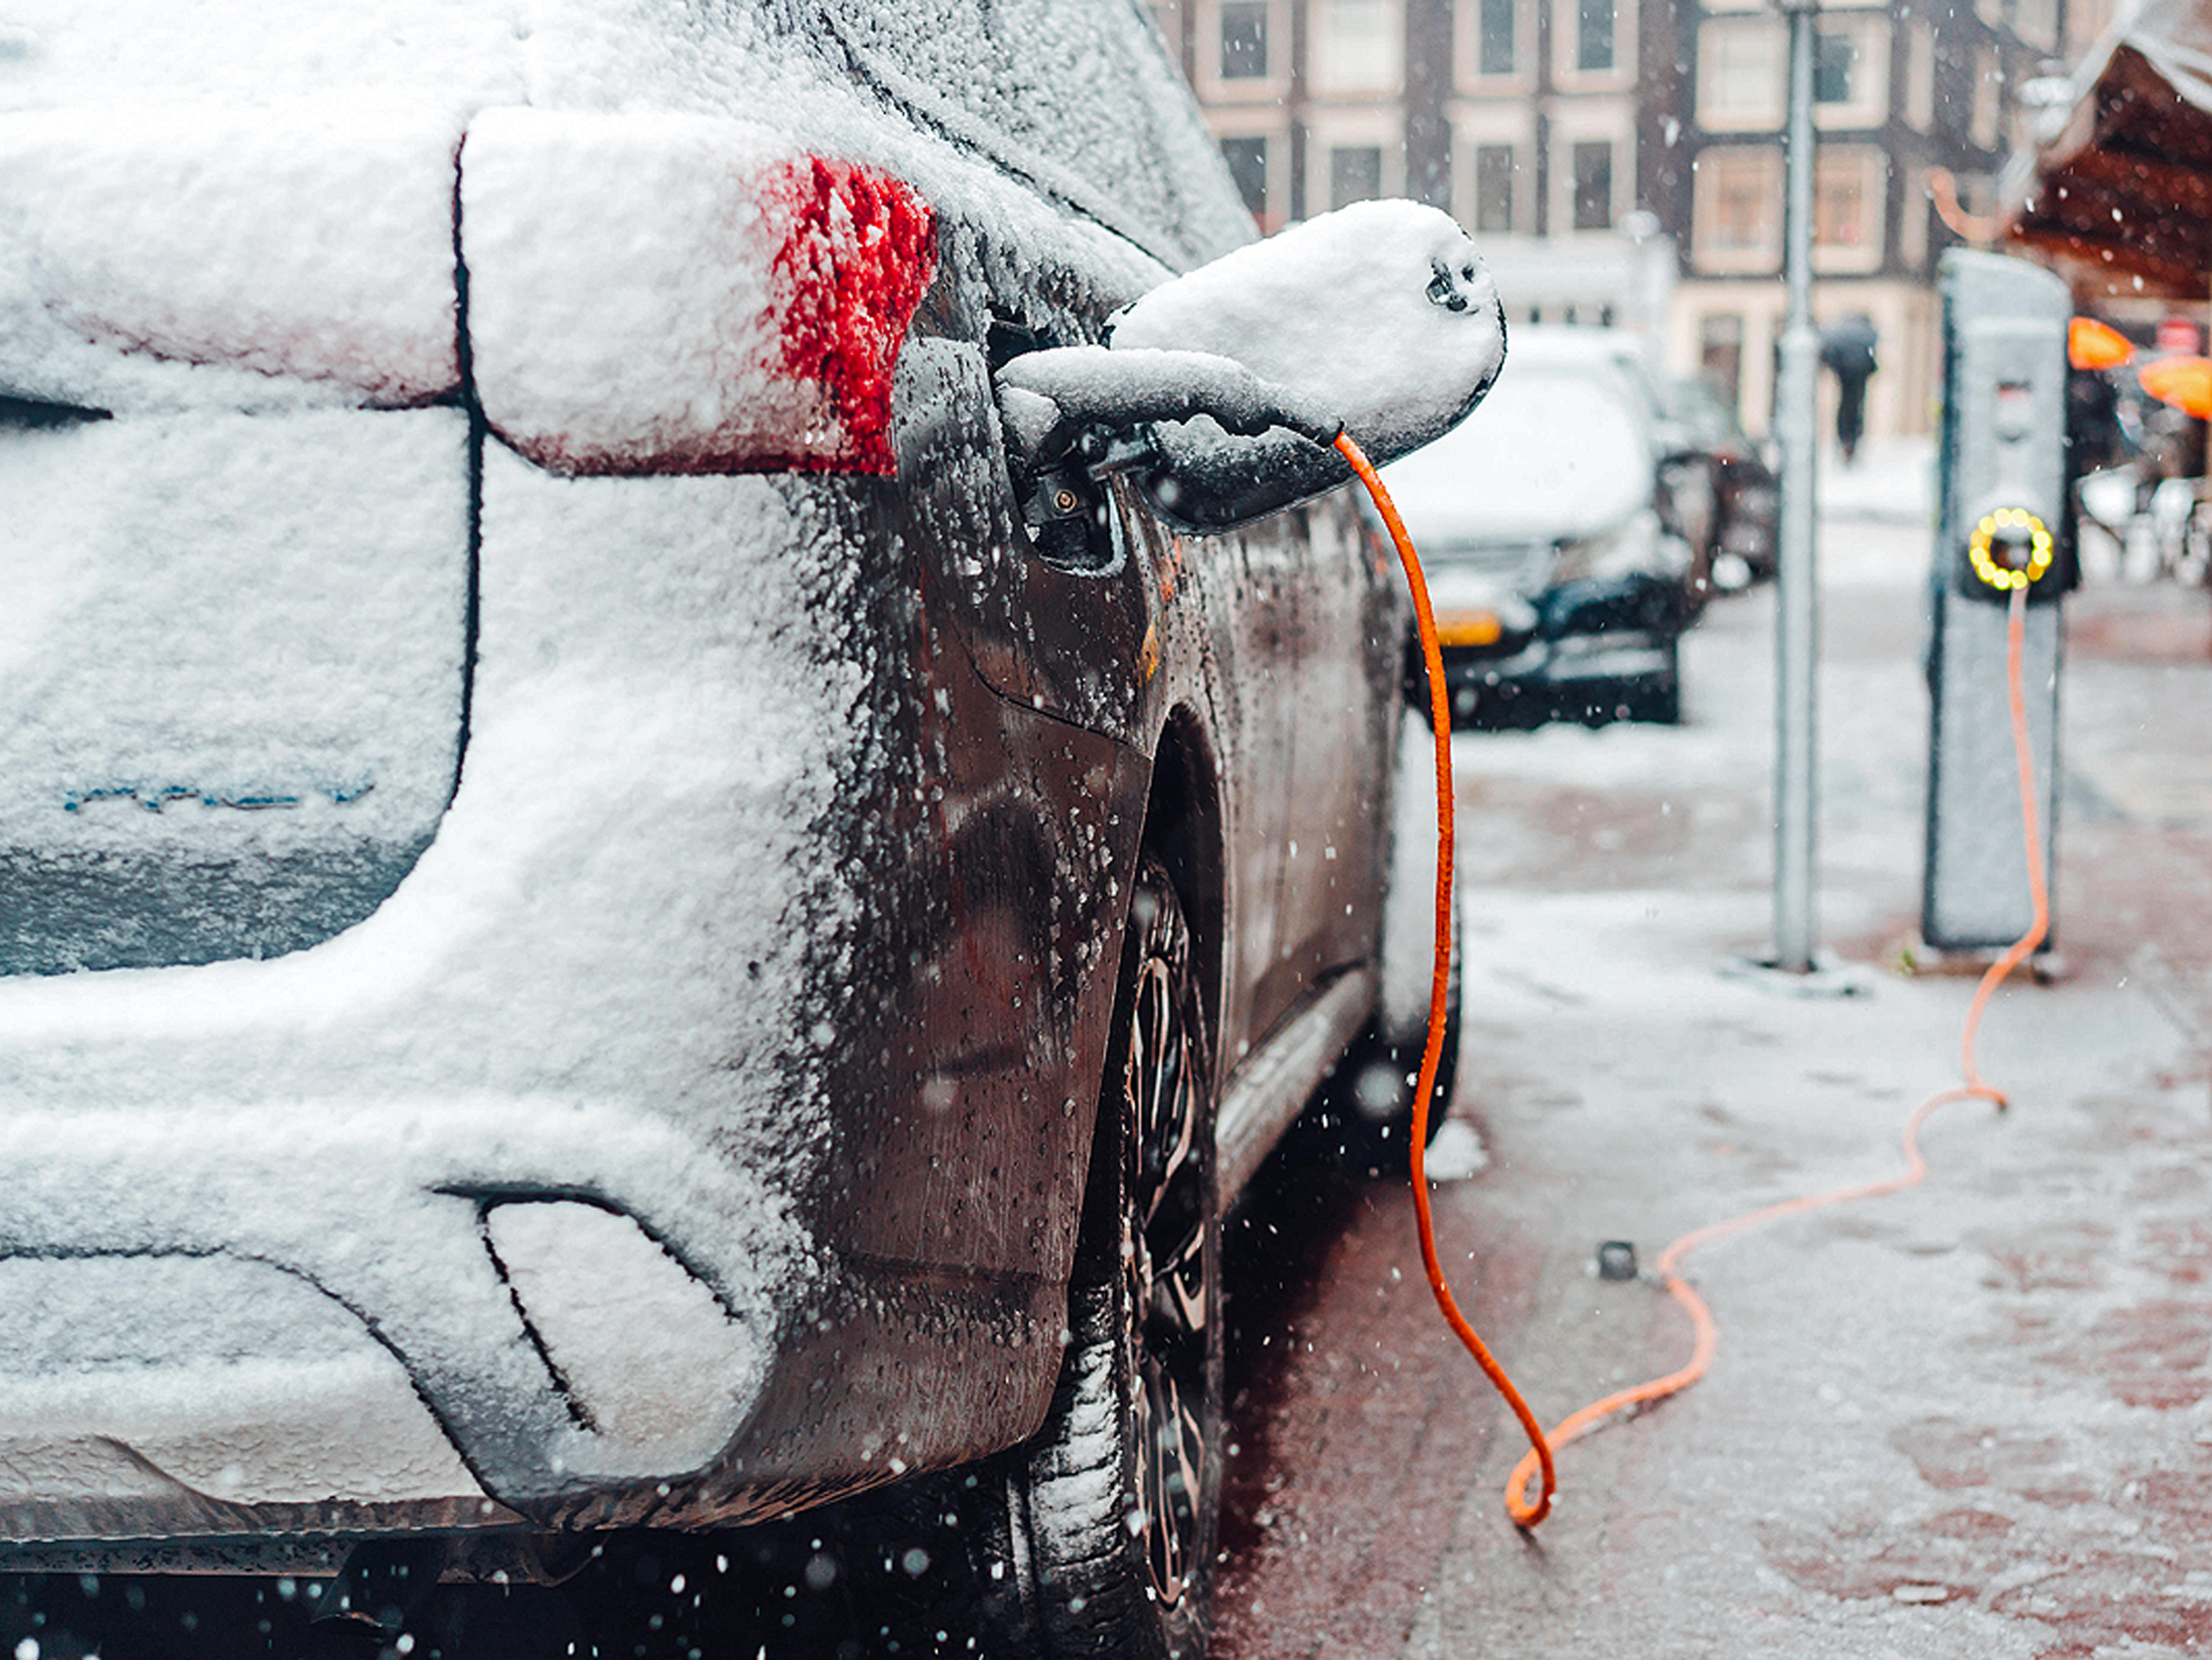 E-Auto/Verbrenner: Wie lange hat man es bei Kälte innen warm? - AUTO BILD